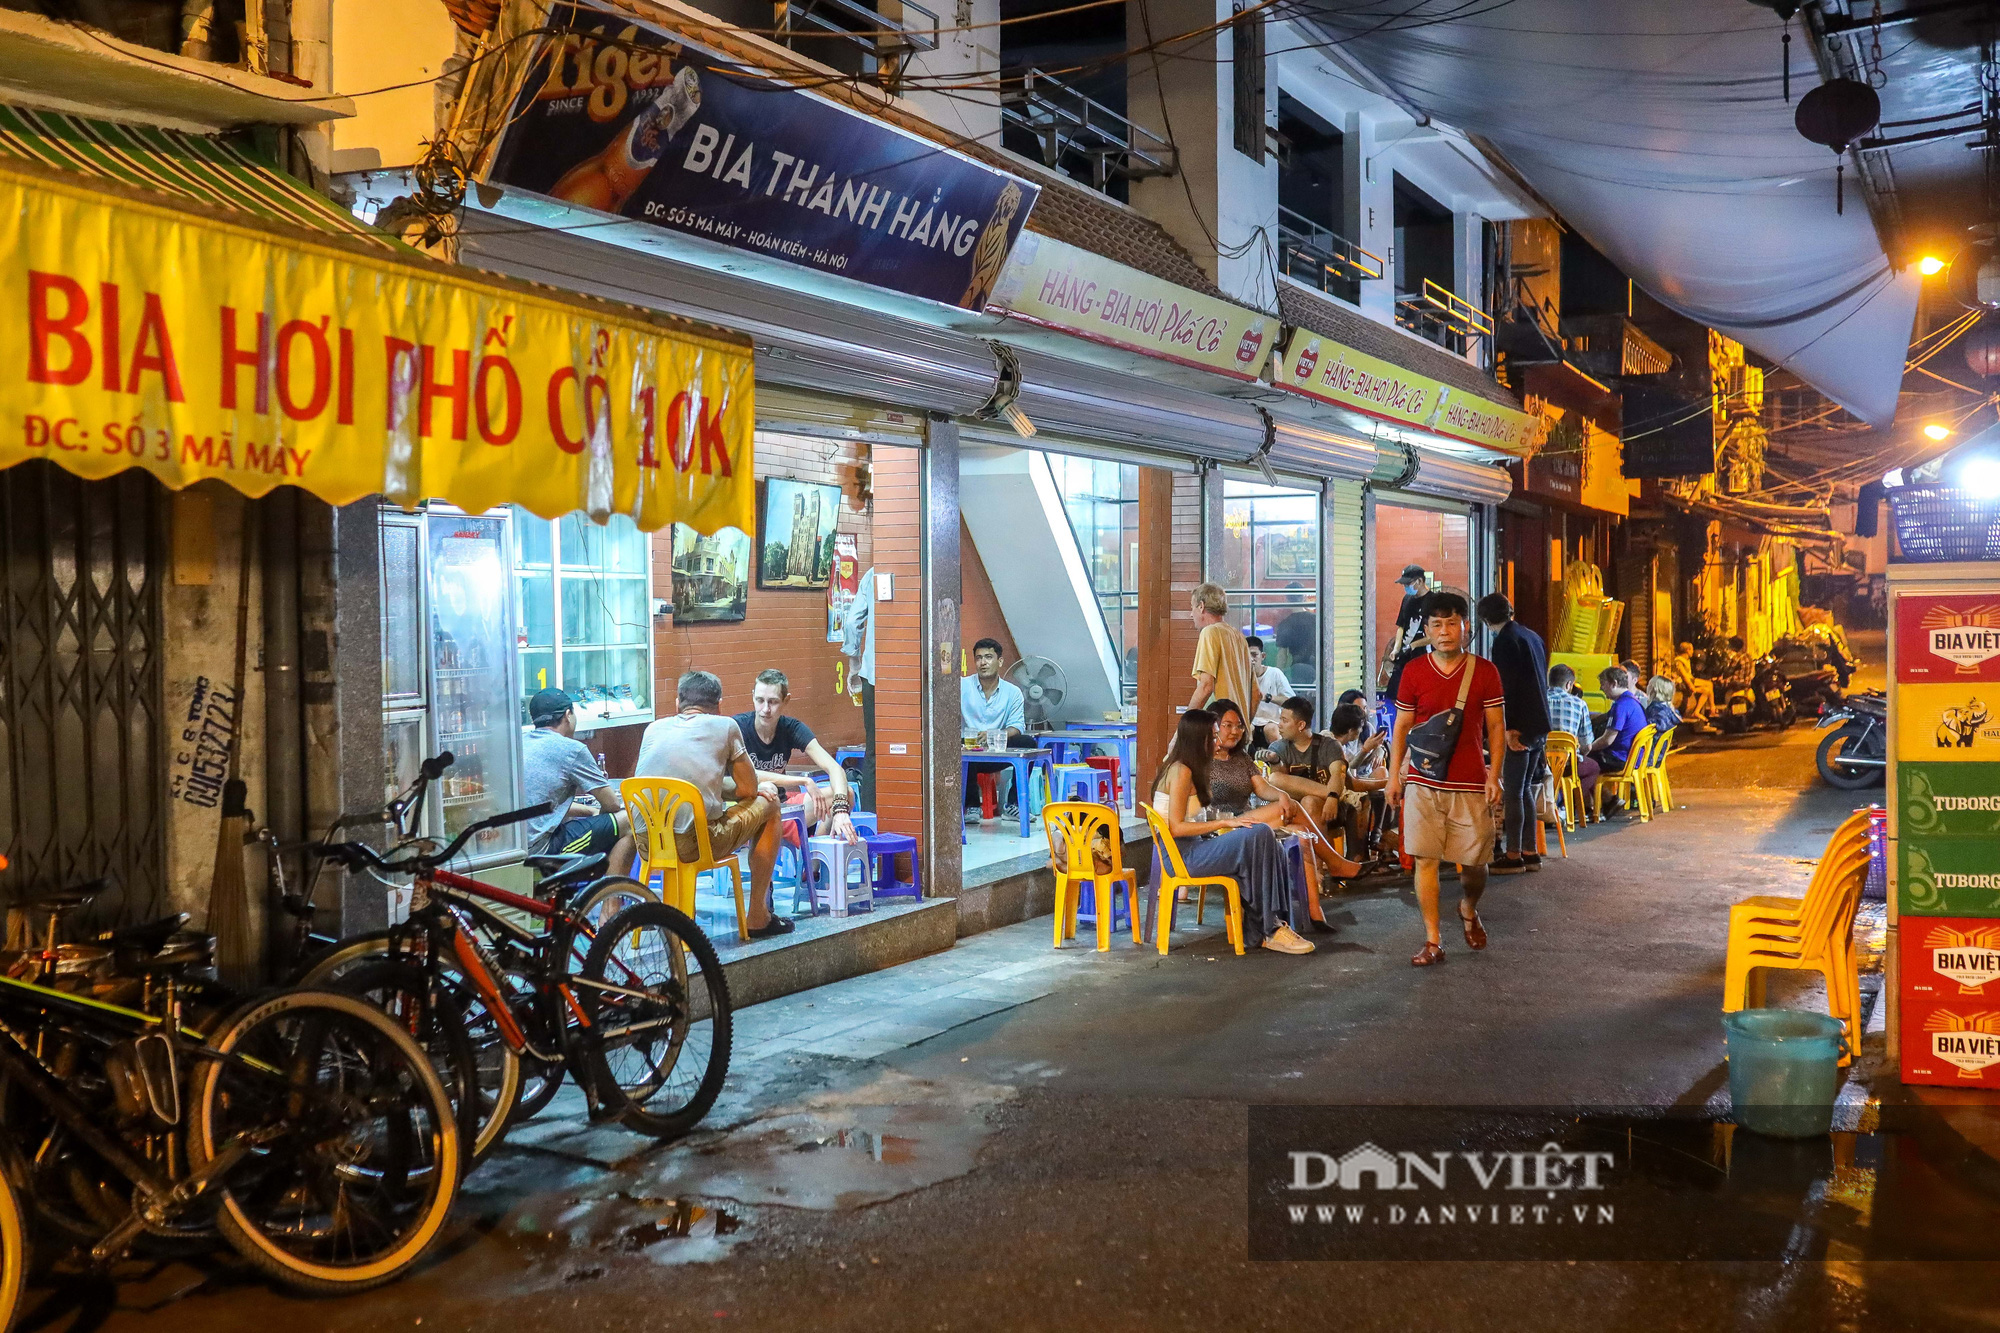 Hàng, quán ở Hà Nội đồng loạt thực hiện giãn cách trong đêm - Ảnh 9.